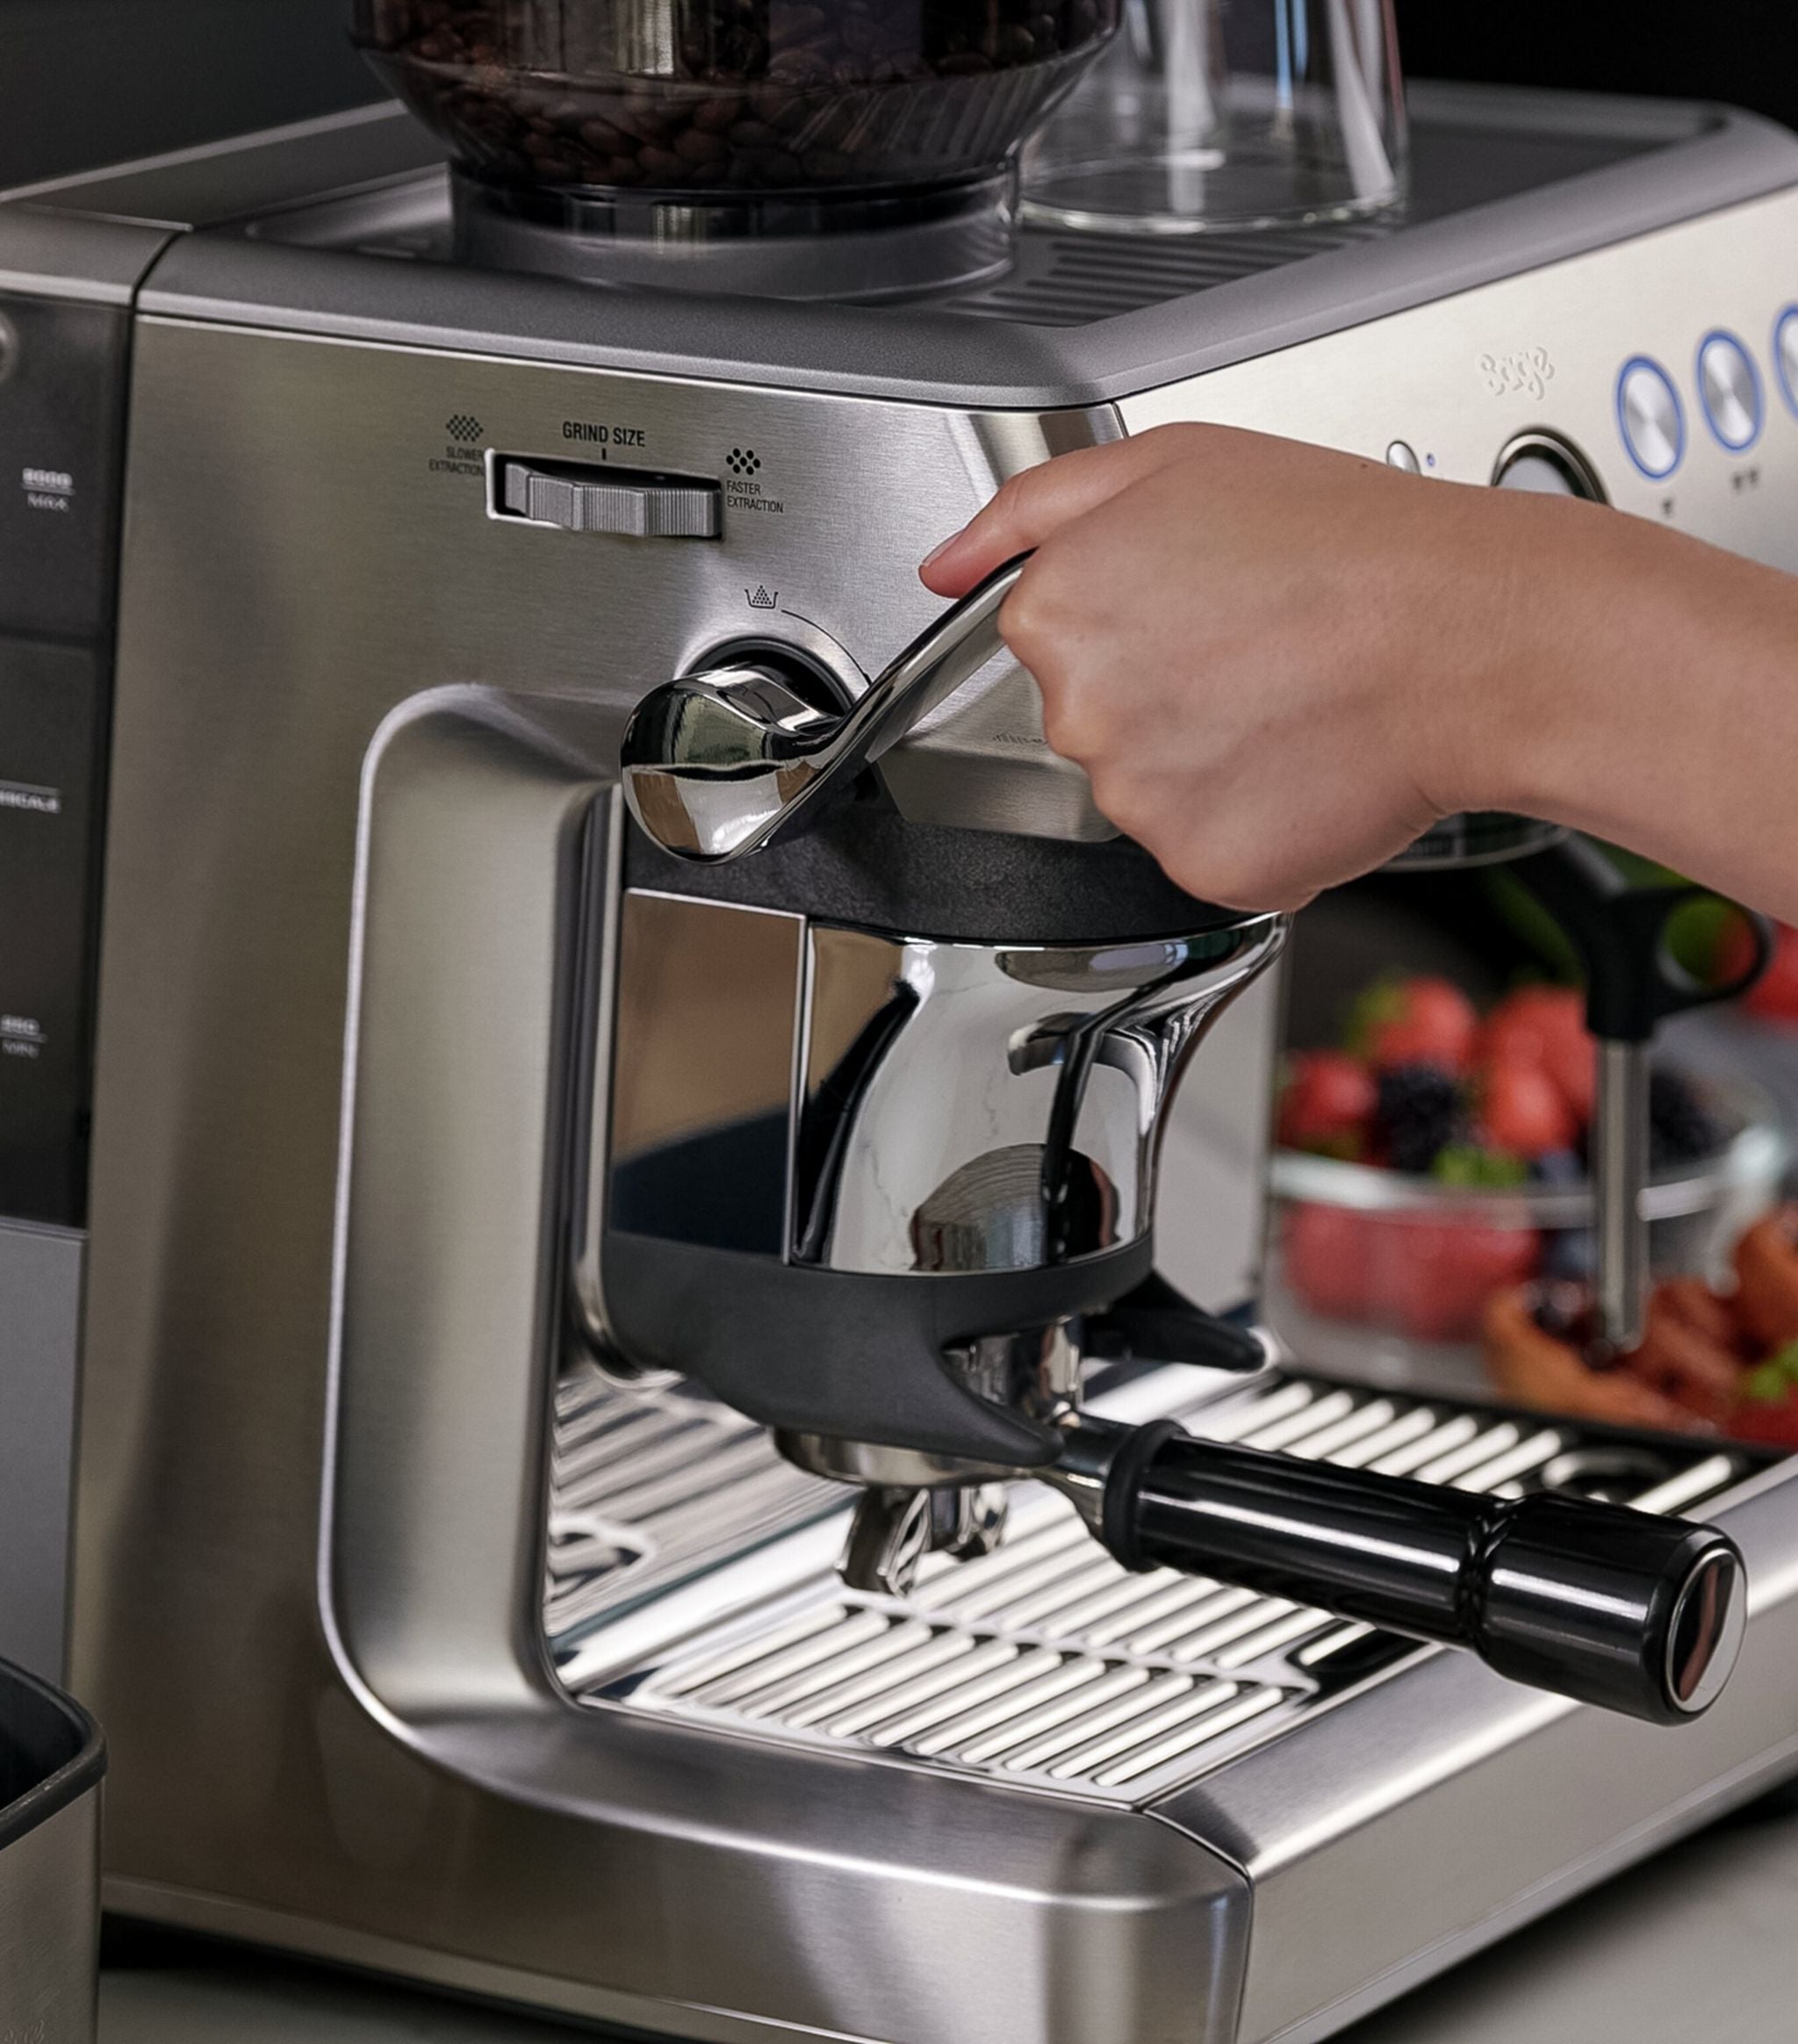 The Barista Express Impress Coffee Machine Tableware & Kitchen Accessories Harrods   